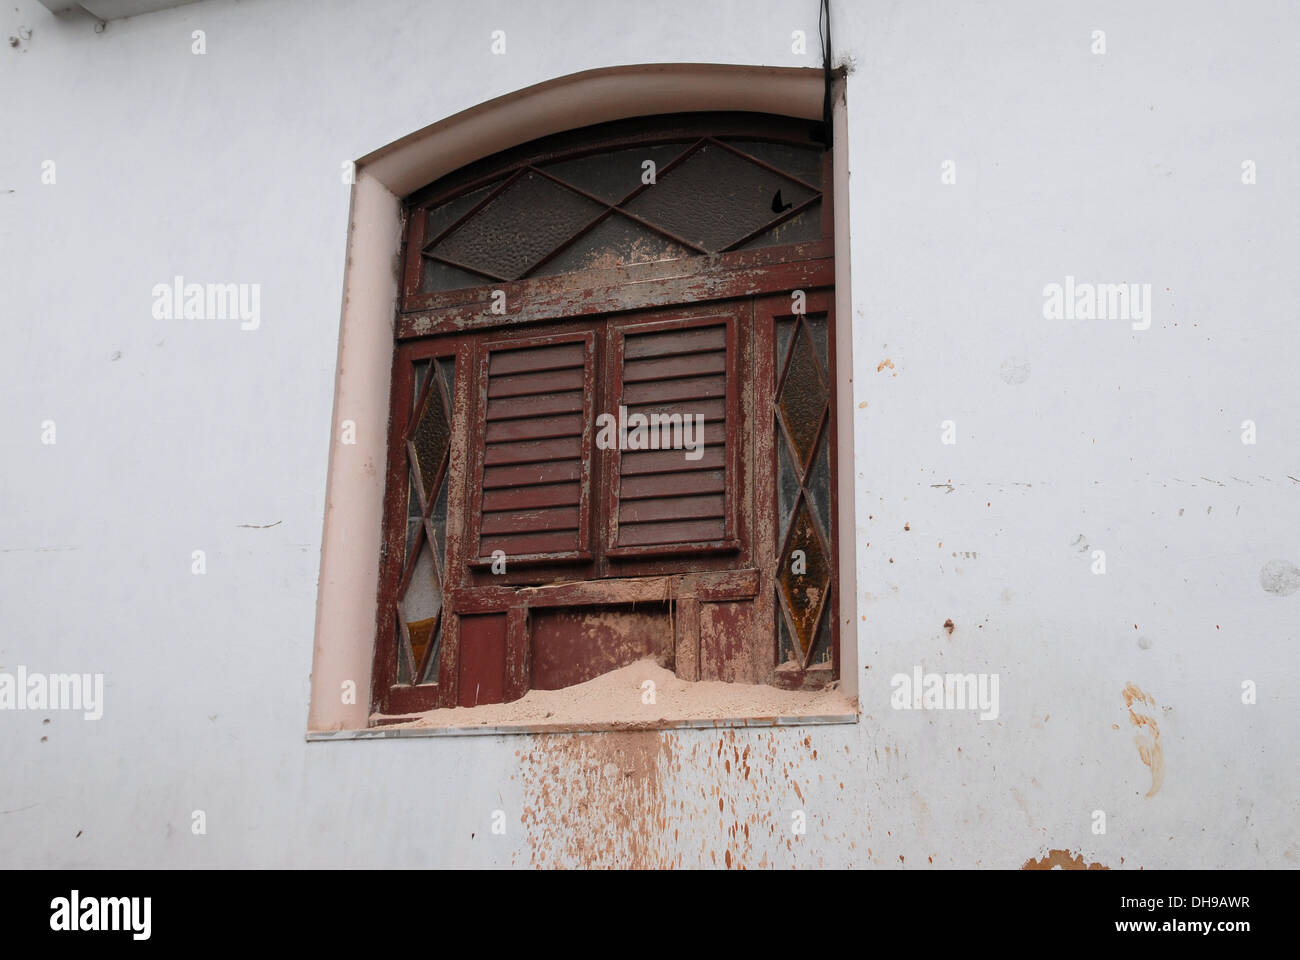 Fenêtre délabré dans le besoin de réparation, dans un bâtiment à La Havane, Cuba Banque D'Images